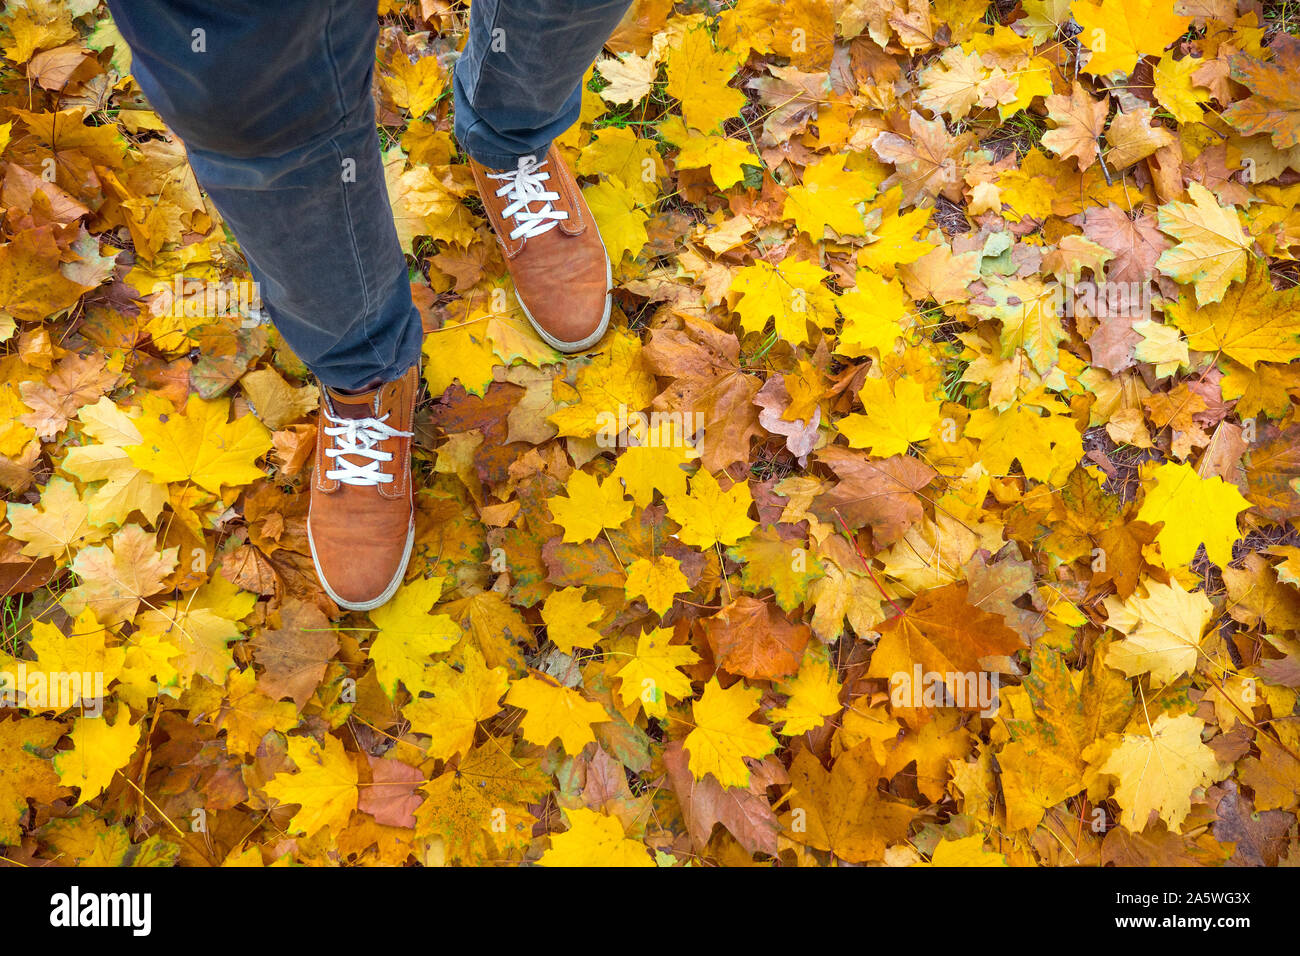 Autunno sfondo, foglie, i piedi e le scarpe. Immagine concettuale dei piedi in scarpe da ginnastica giallo su foglie di autunno. Scarpe per passeggiate nella natura. Piedi sneakers camminando sulle foglie di autunno. Lifestyle Moda stile alla moda Foto Stock